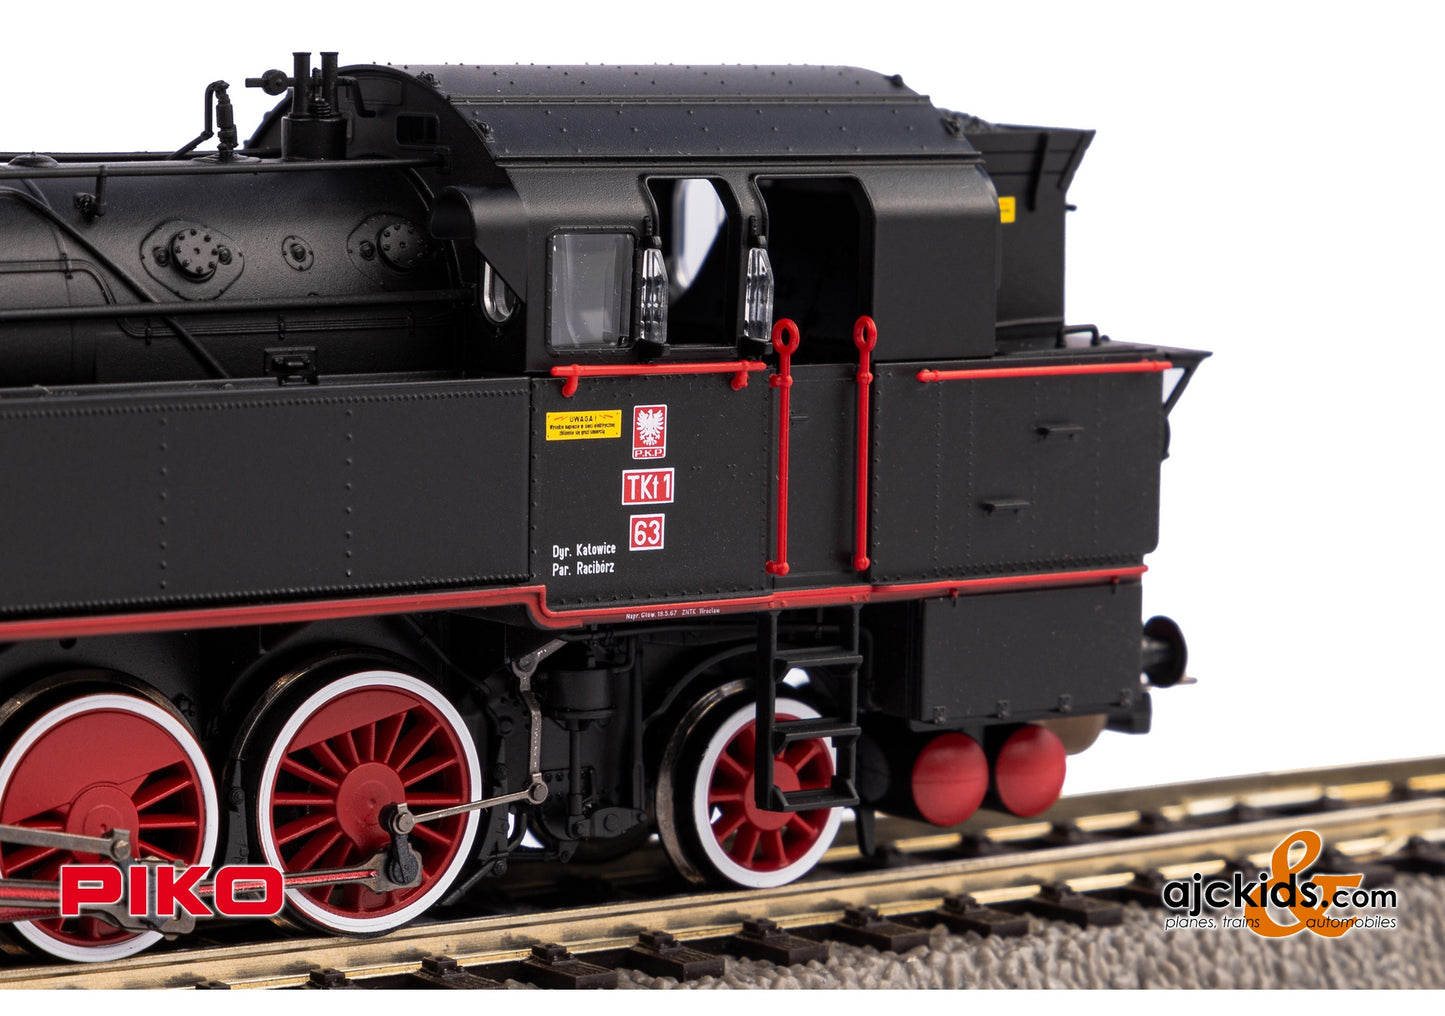 Piko 50663 - Tkt1-63 Steam Locomotive PKP III Sound